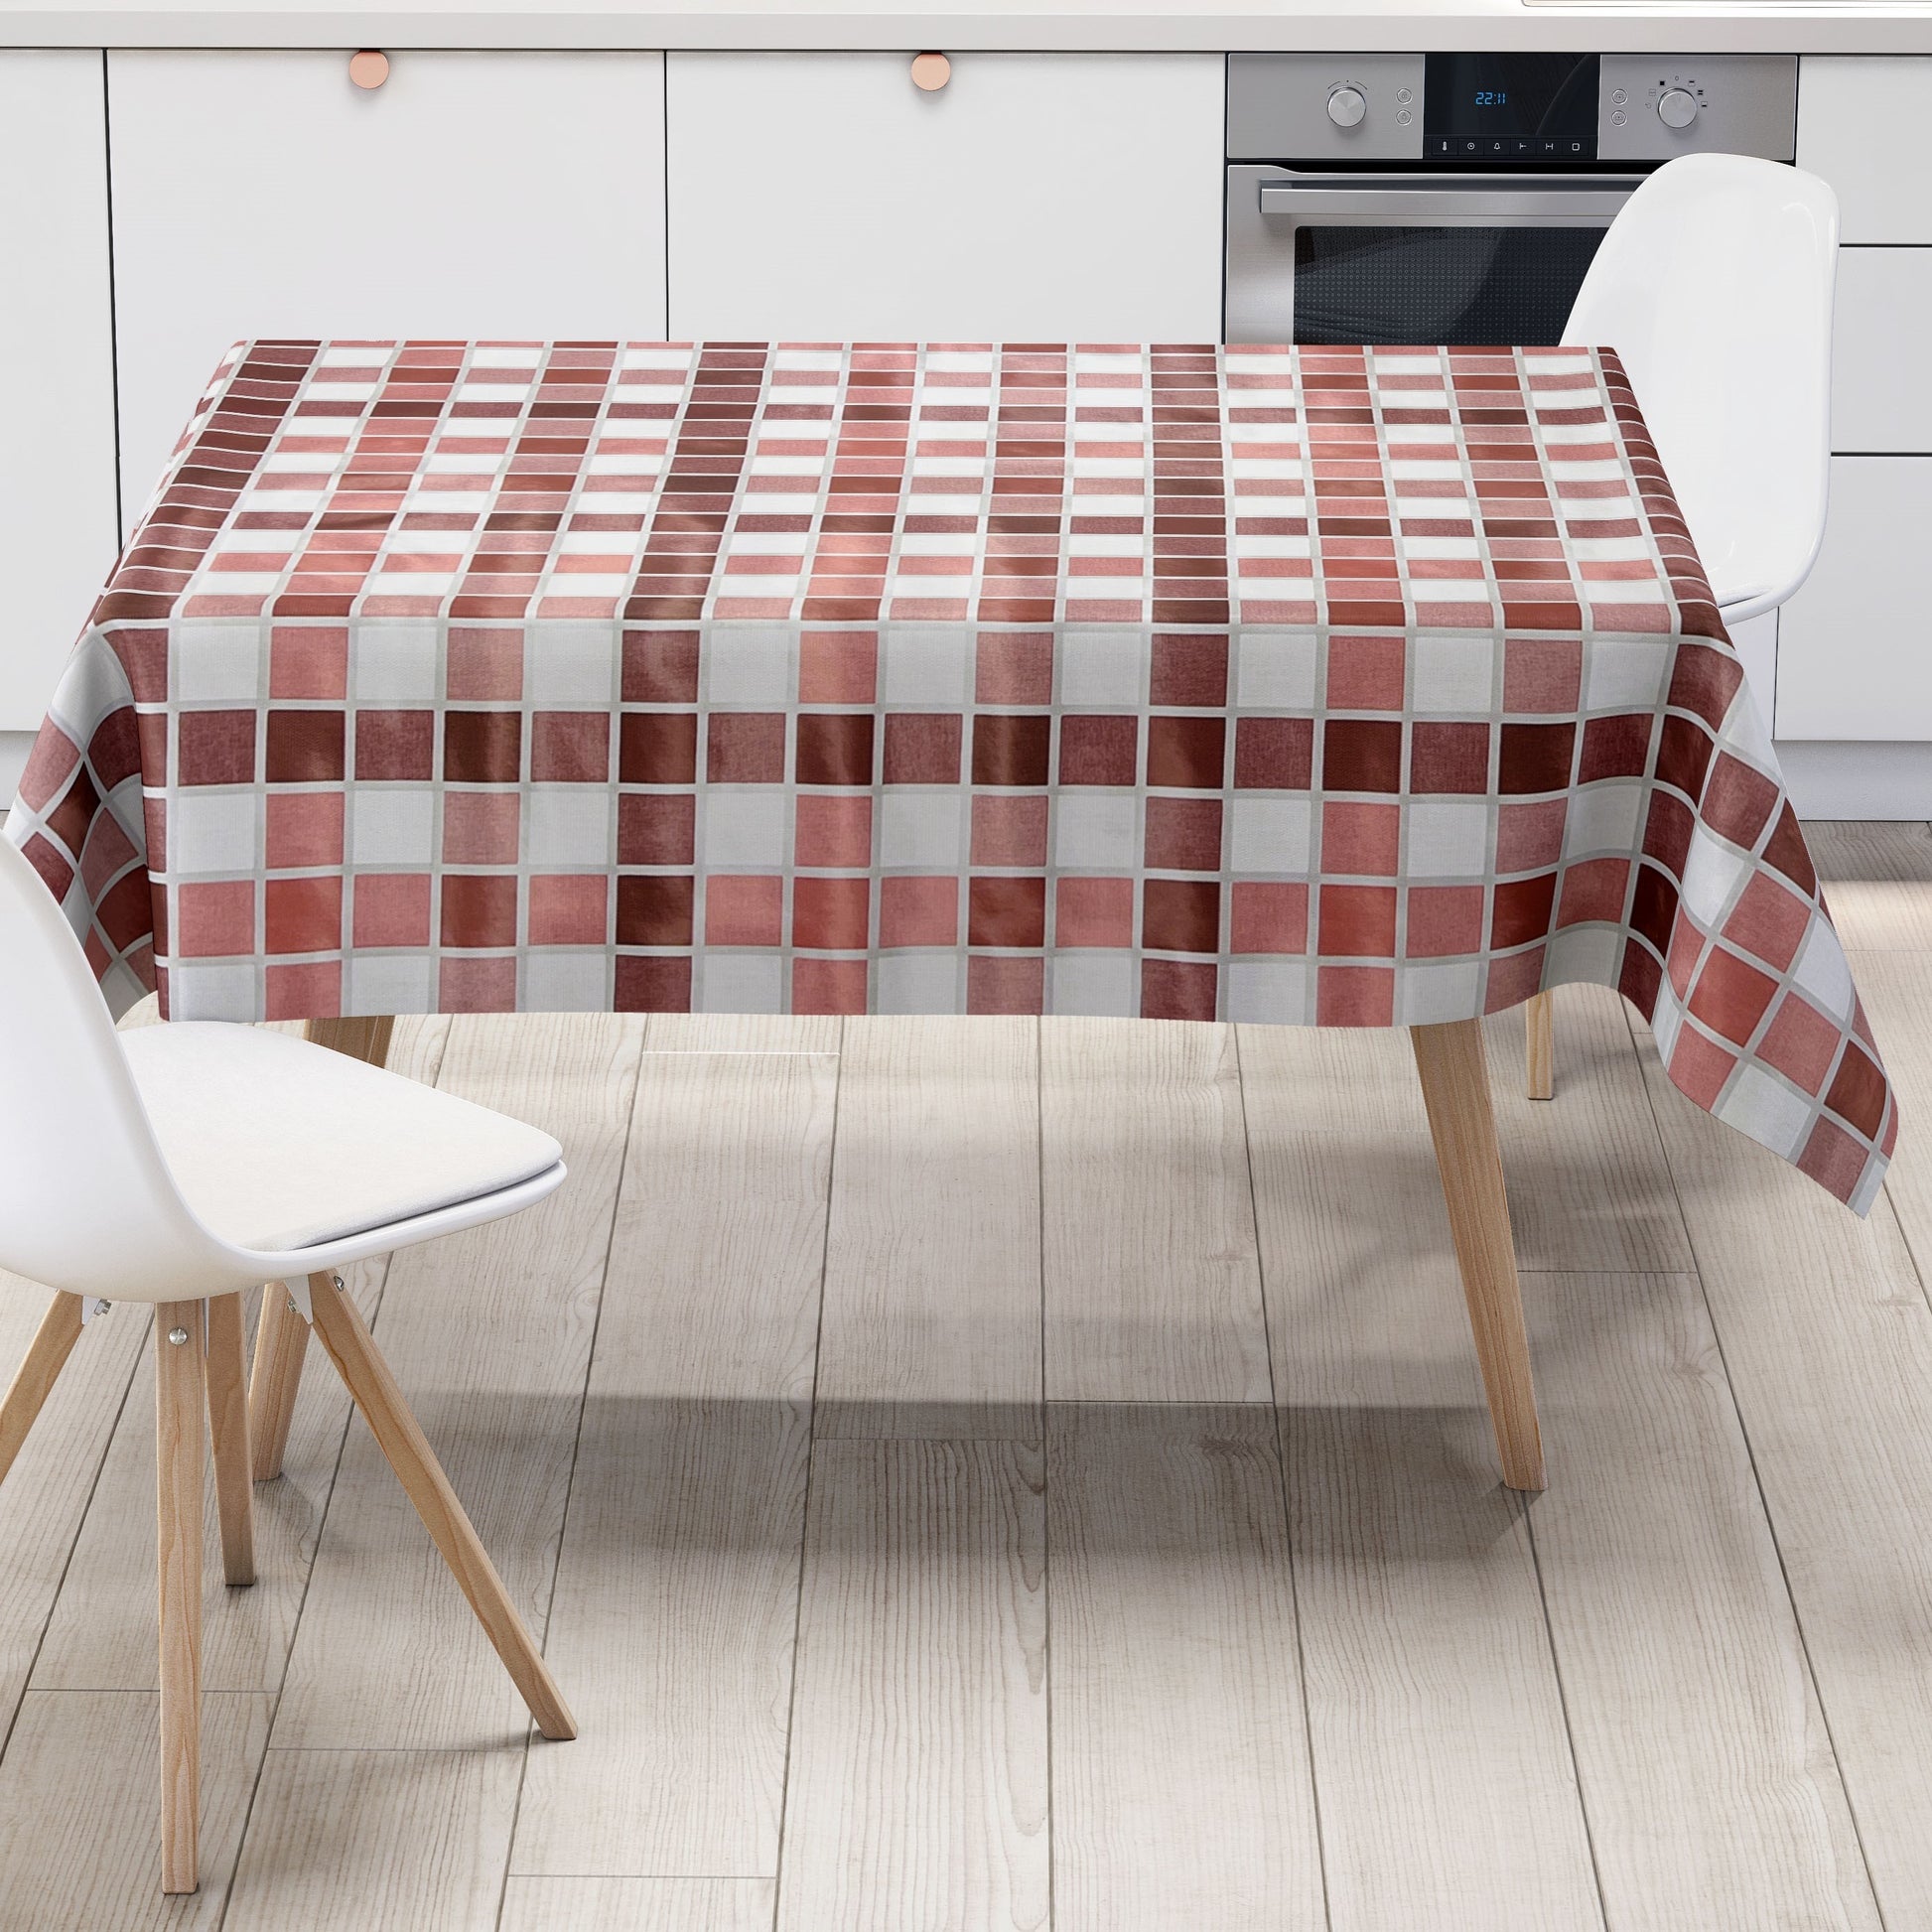 abwaschbare Tischdecke, Wachstuchtischdecke, Wachstuch, eckig rund oval Fliesen Mosaik rot bordeaux dunkelrot 